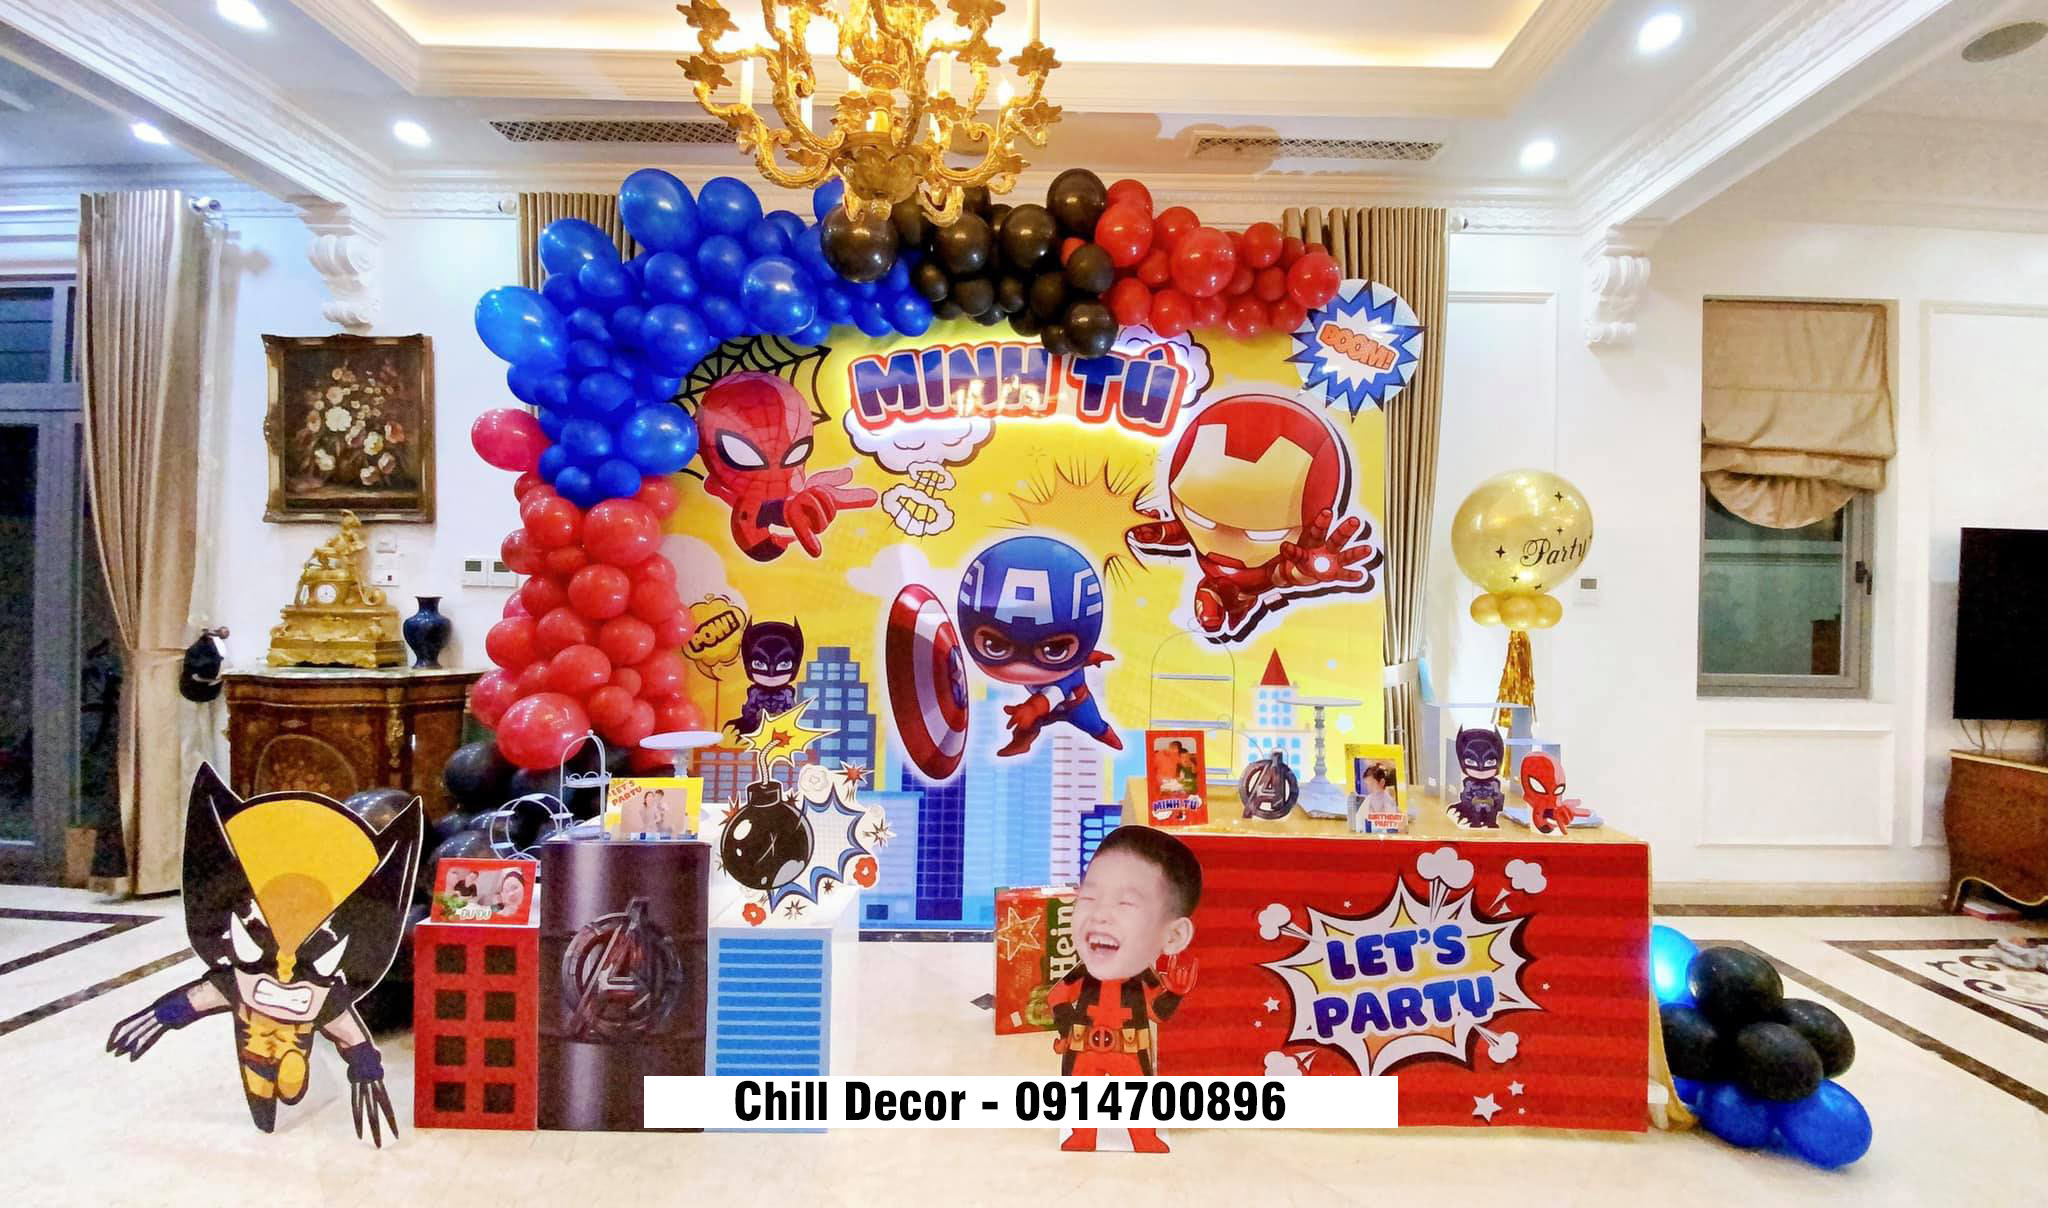 Dịch vụ trang trí sinh nhật cho bé tại nhà ở Hà Nội - Chill decor